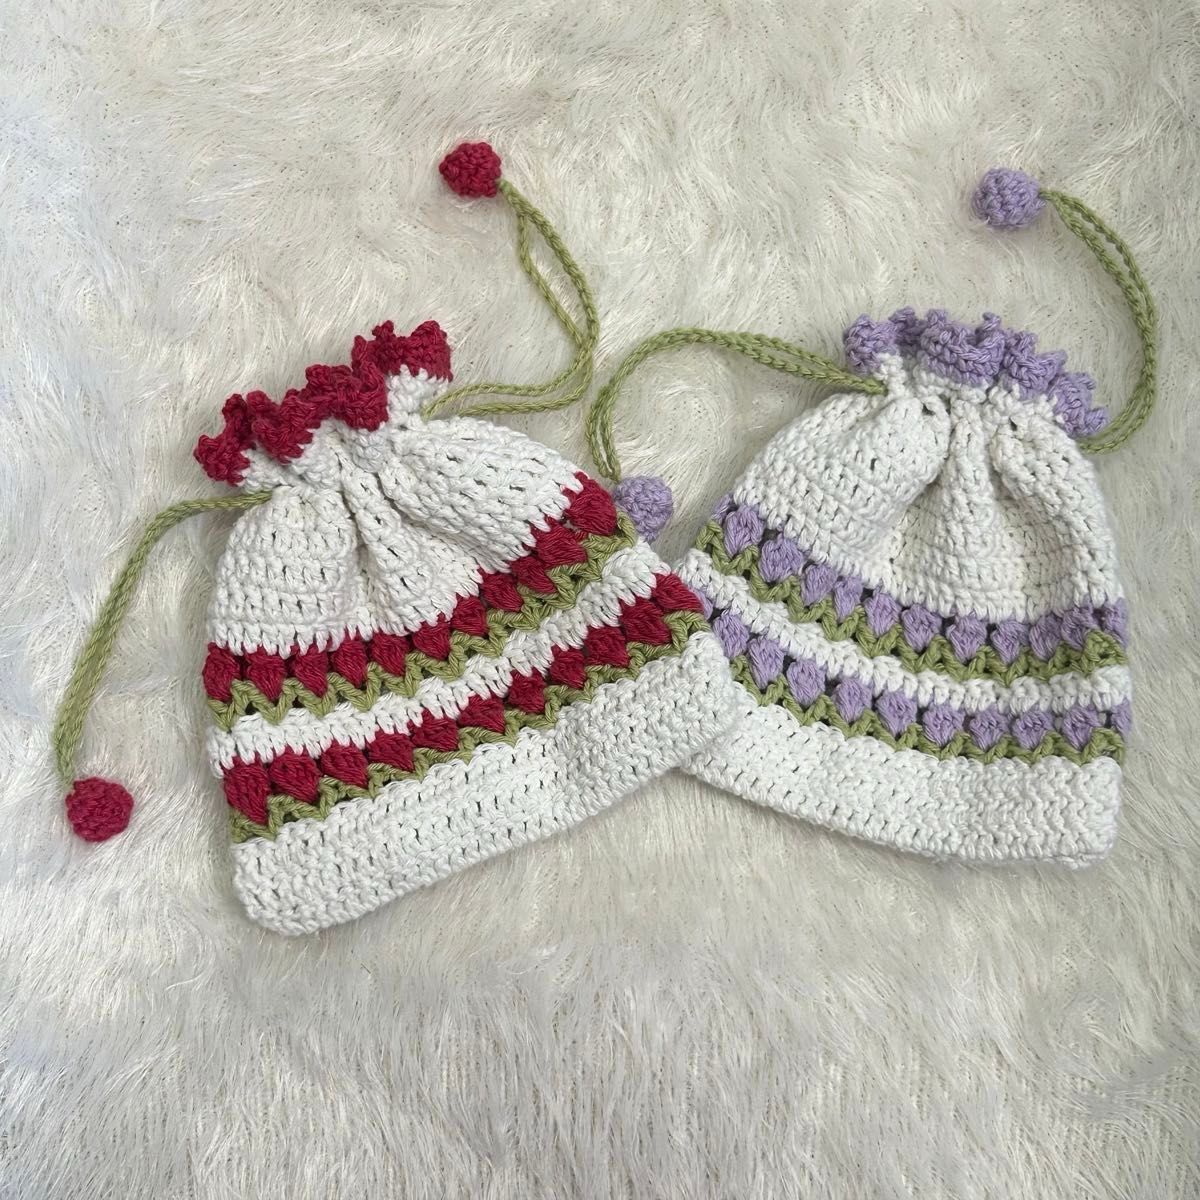 ハンドメイド 手編み かぎ針編み 巾着 ポーチ 小物入れ チューリップ 花 紫 ギフト プレゼント